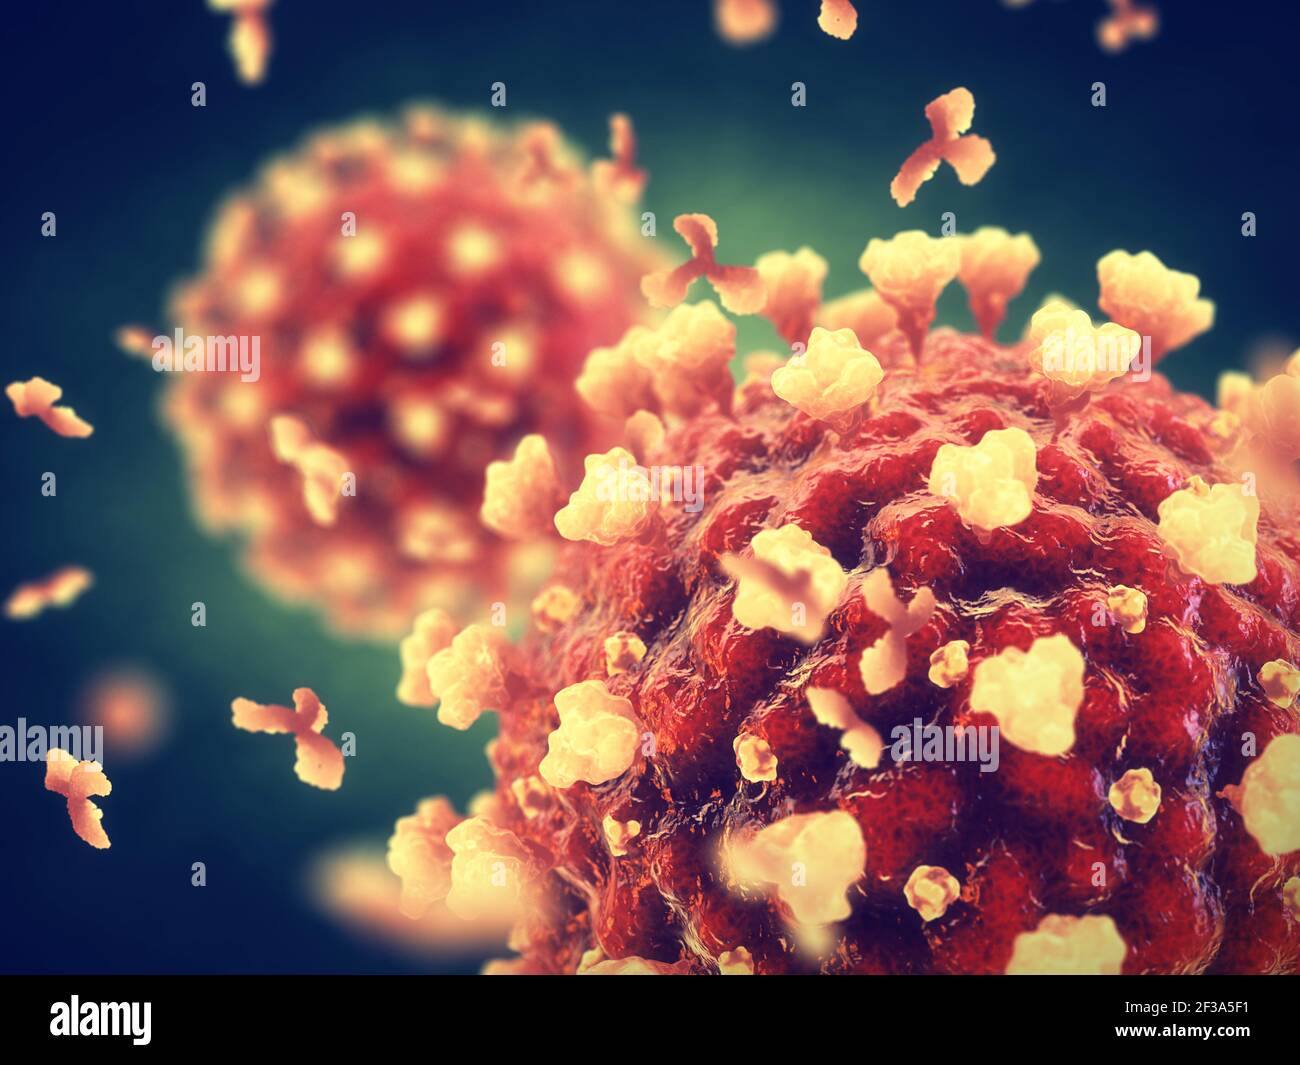 Il Coronavirus è un virus altamente contagioso che provoca gravi sindrosi respiratorie acute. La pandemia globale COVID-19 è causata dalla SARS COV-2. Foto Stock